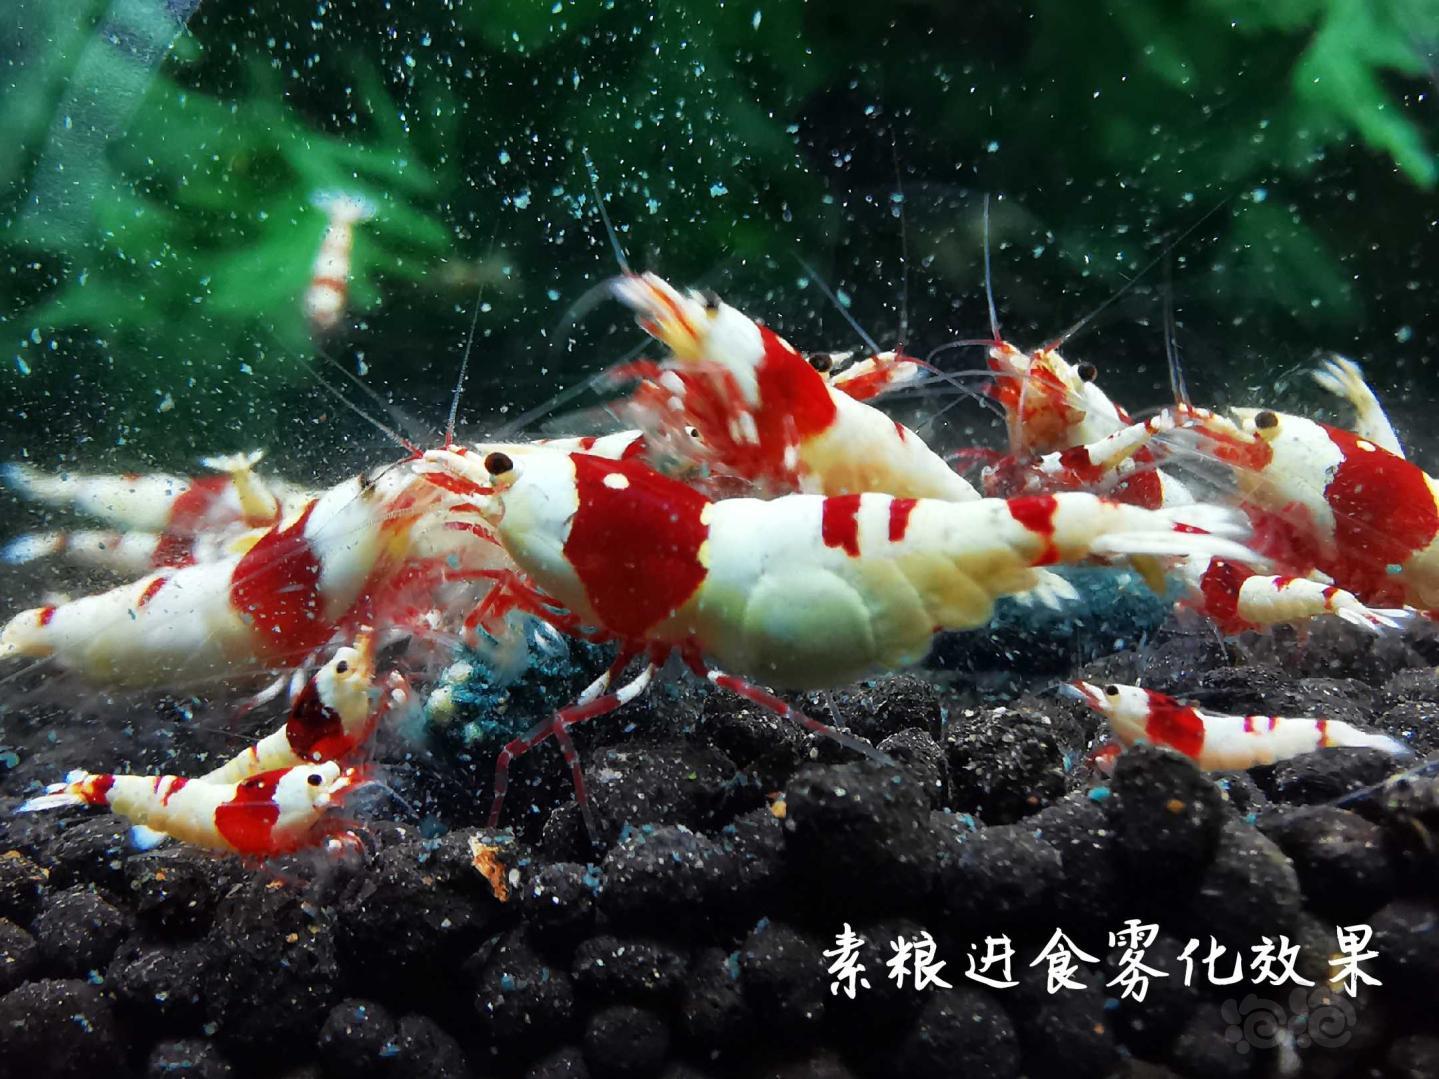 【虾】2020-04-29#RMB拍卖瑾福水晶虾粮套装一套-图6